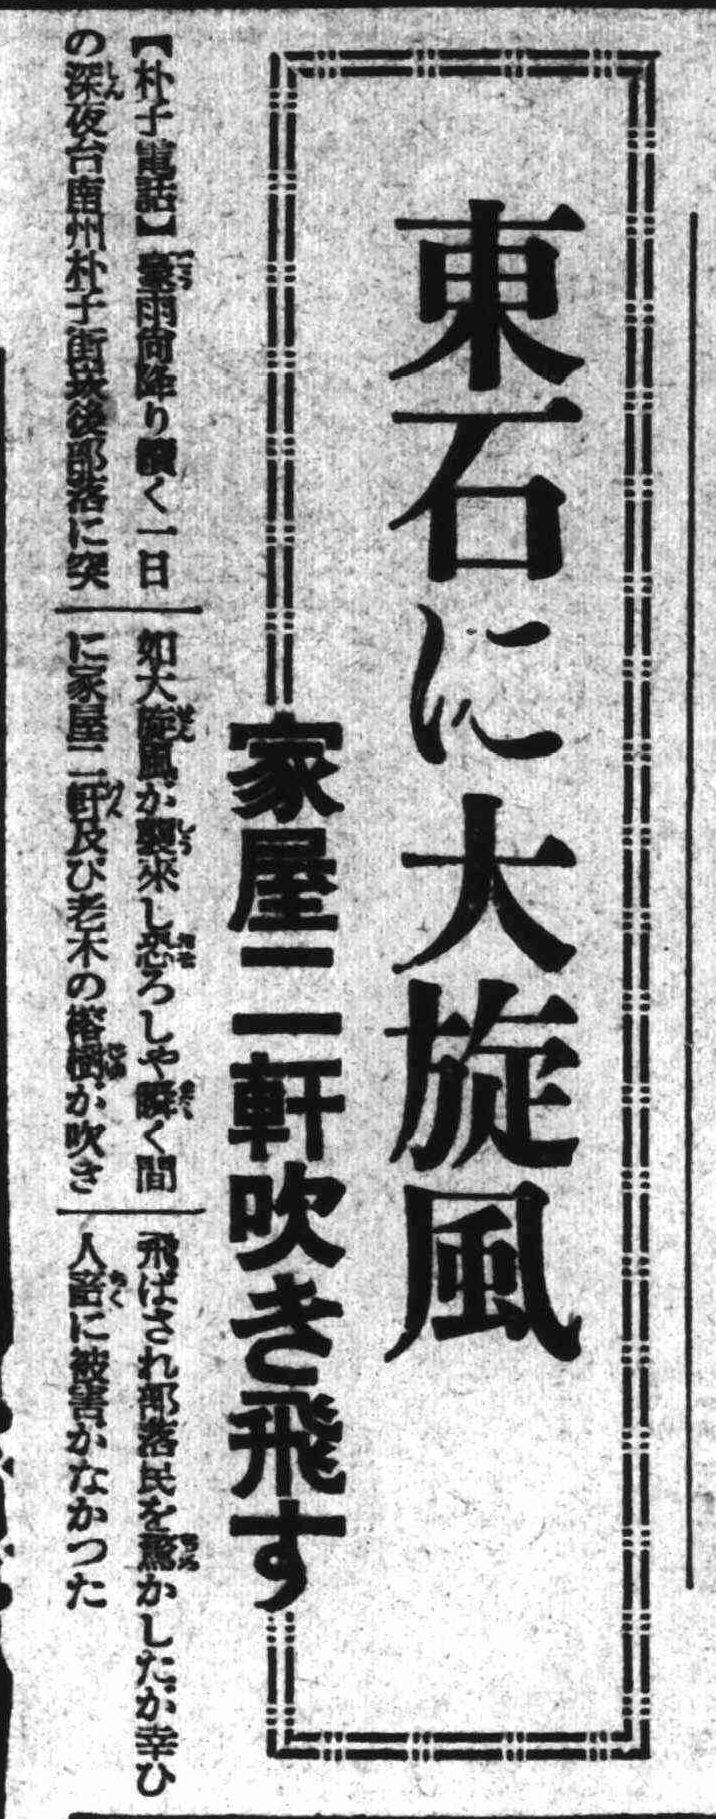 題名：東石一陣旋風，吹翻兩間房子 《臺灣日日新報》，1938年8月4日，日刊5版